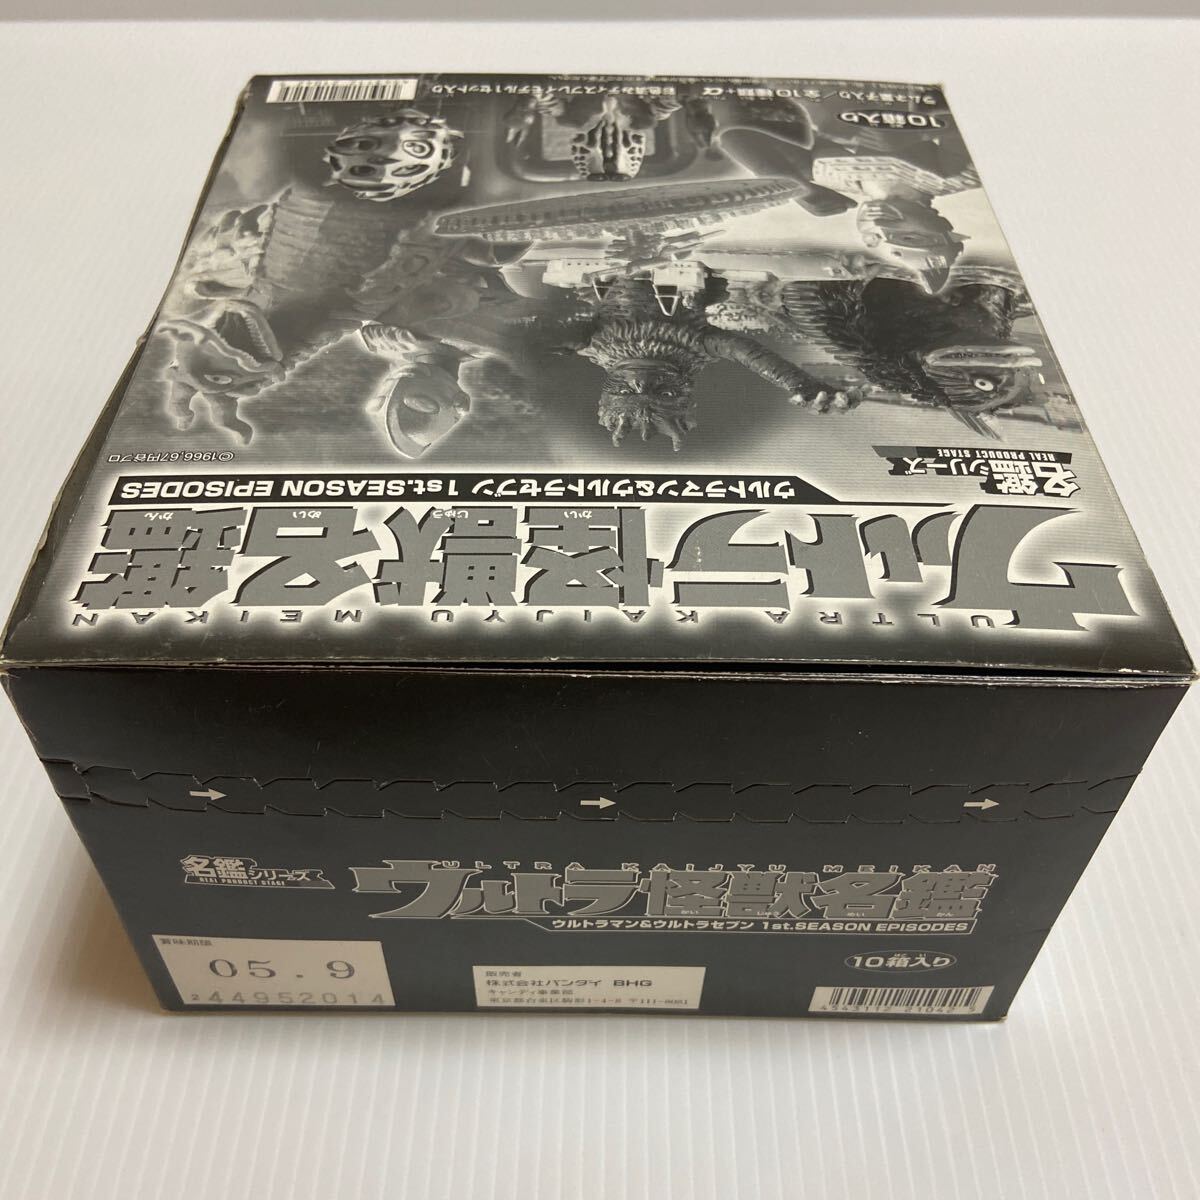 ウルトラ怪獣名鑑 ウルトラマン&ウルトラセブン 1st.SEASON EPISODES 収納BOX 外箱パッケージ 当時品１点もの 年代物食玩の画像6